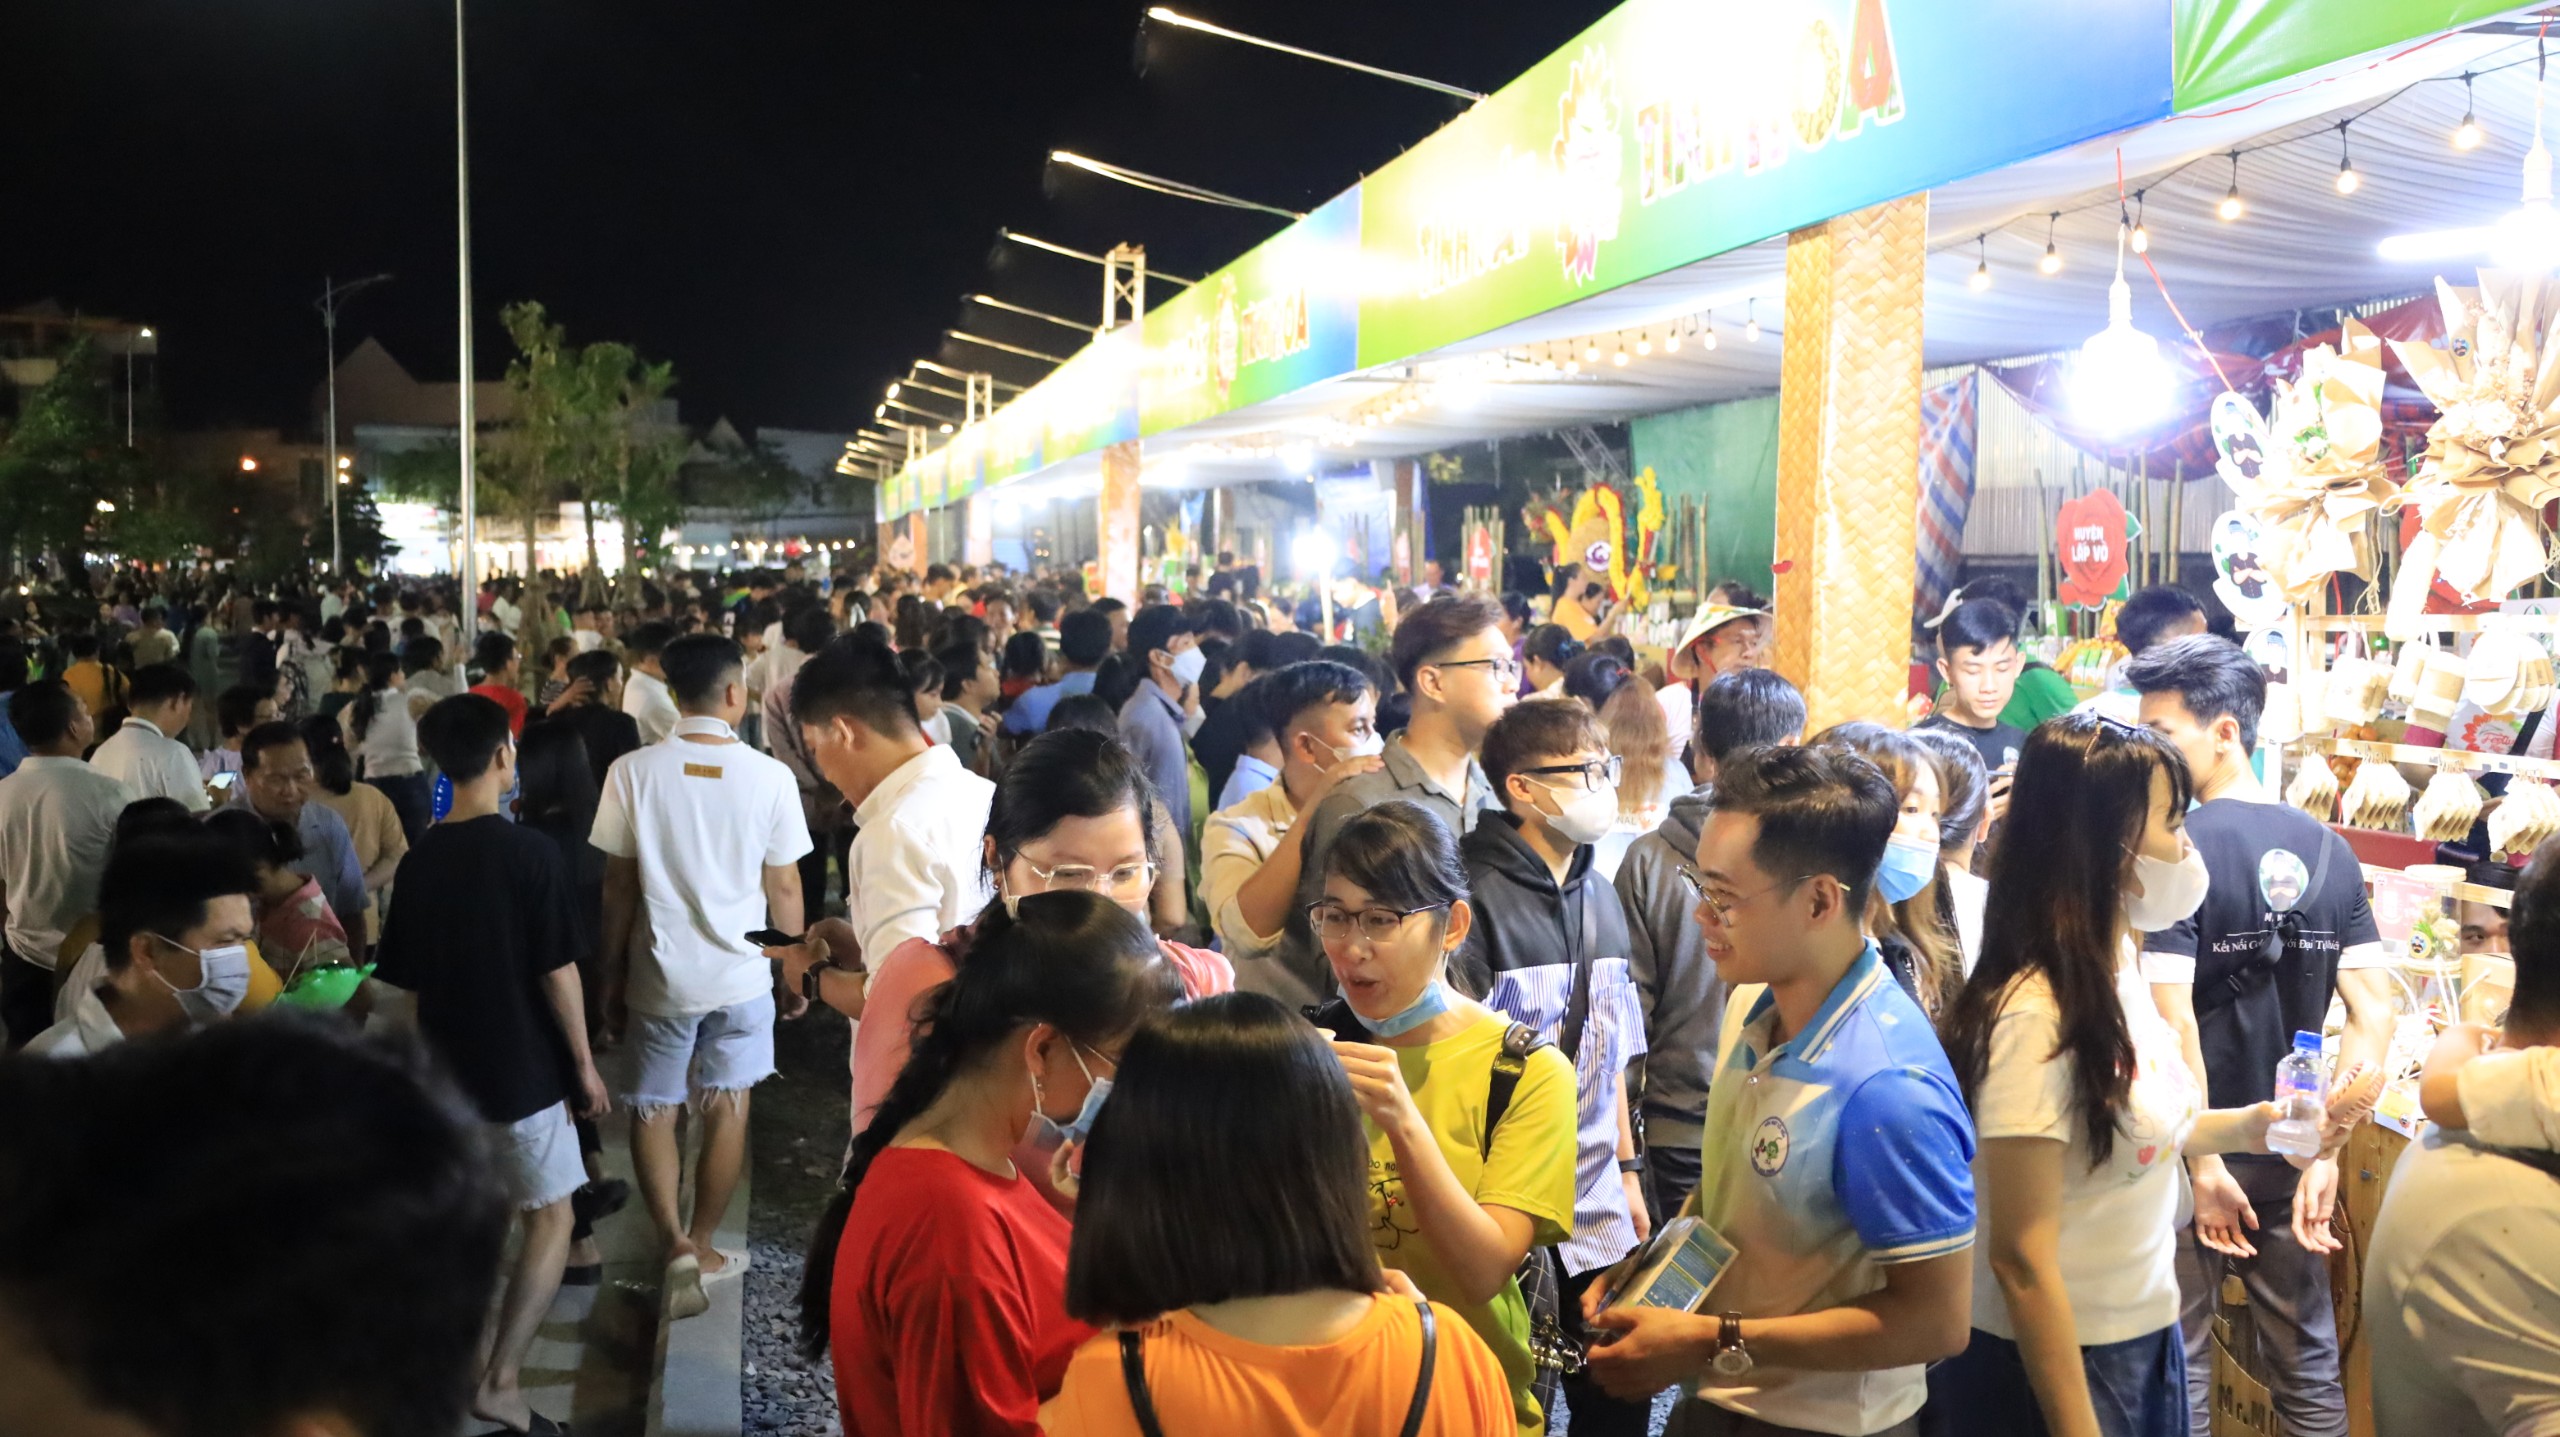 Đêm khai mạc đã đón hàng chục ngàn lượt người dân, du khách đến tham dự lễ khai mạc, tham quan, mua sắm.